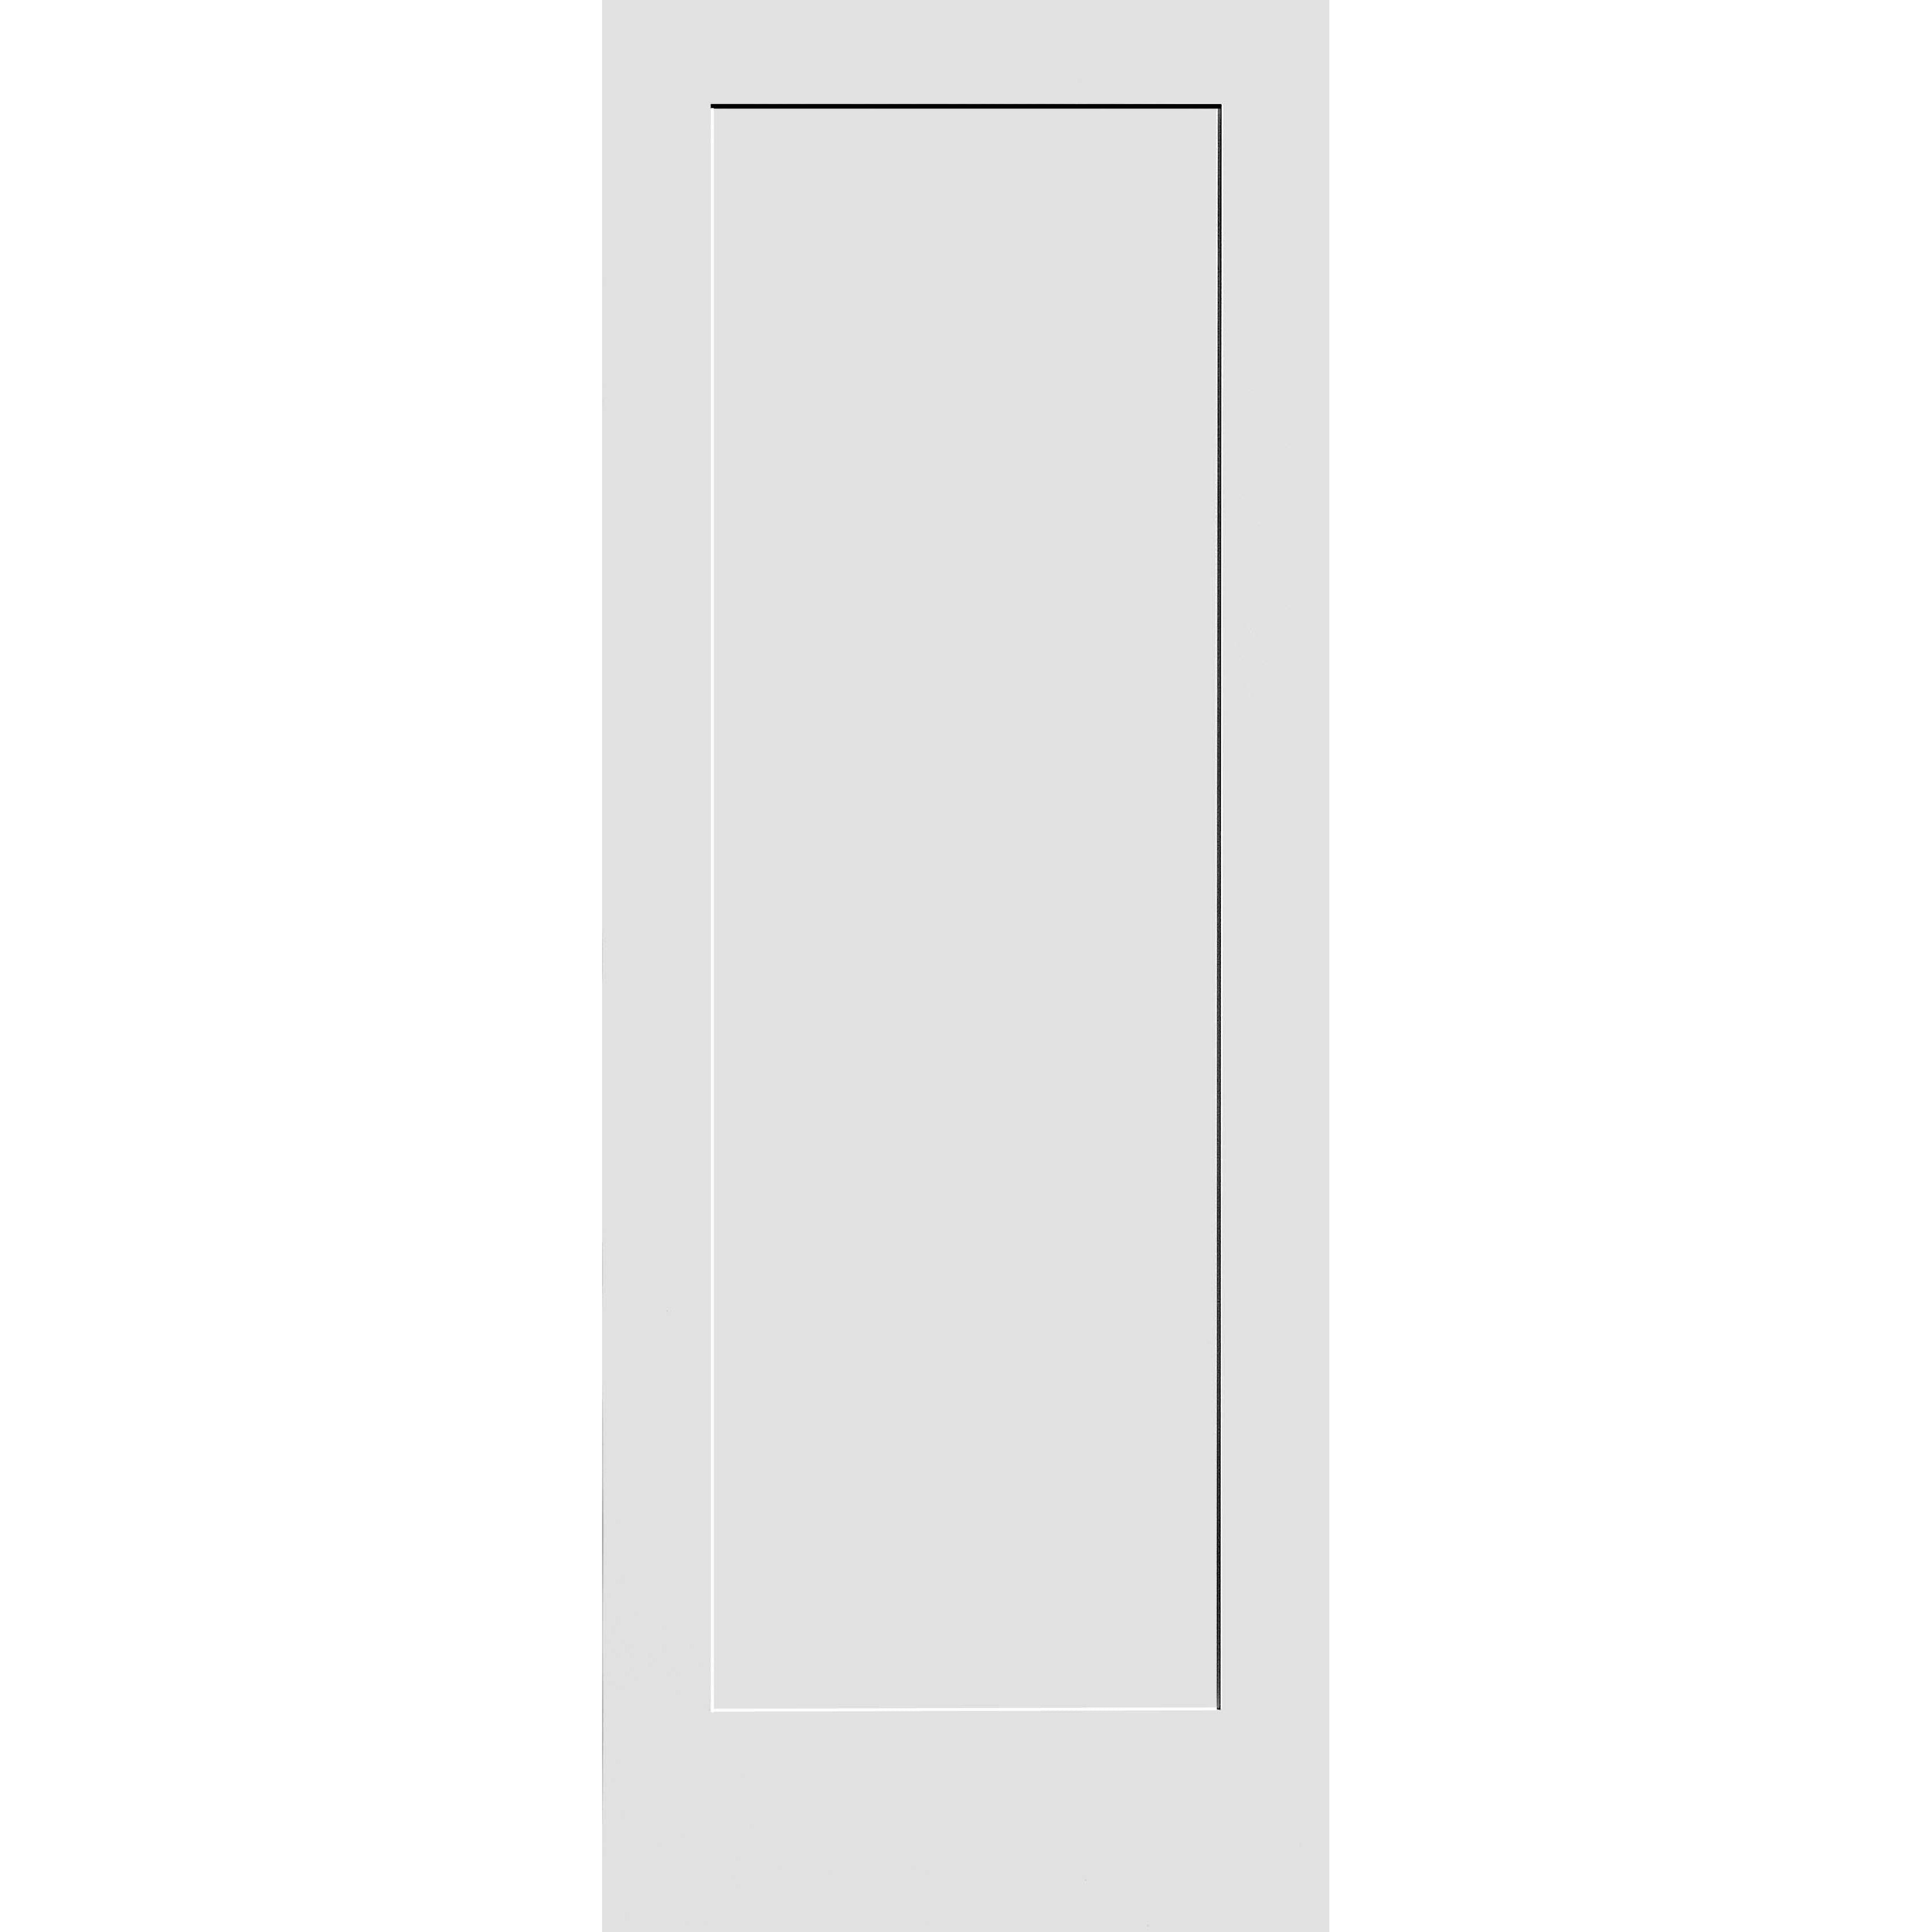 28X96 #8401 MDF PRIMED SHAKER PANEL INTERIOR DOOR